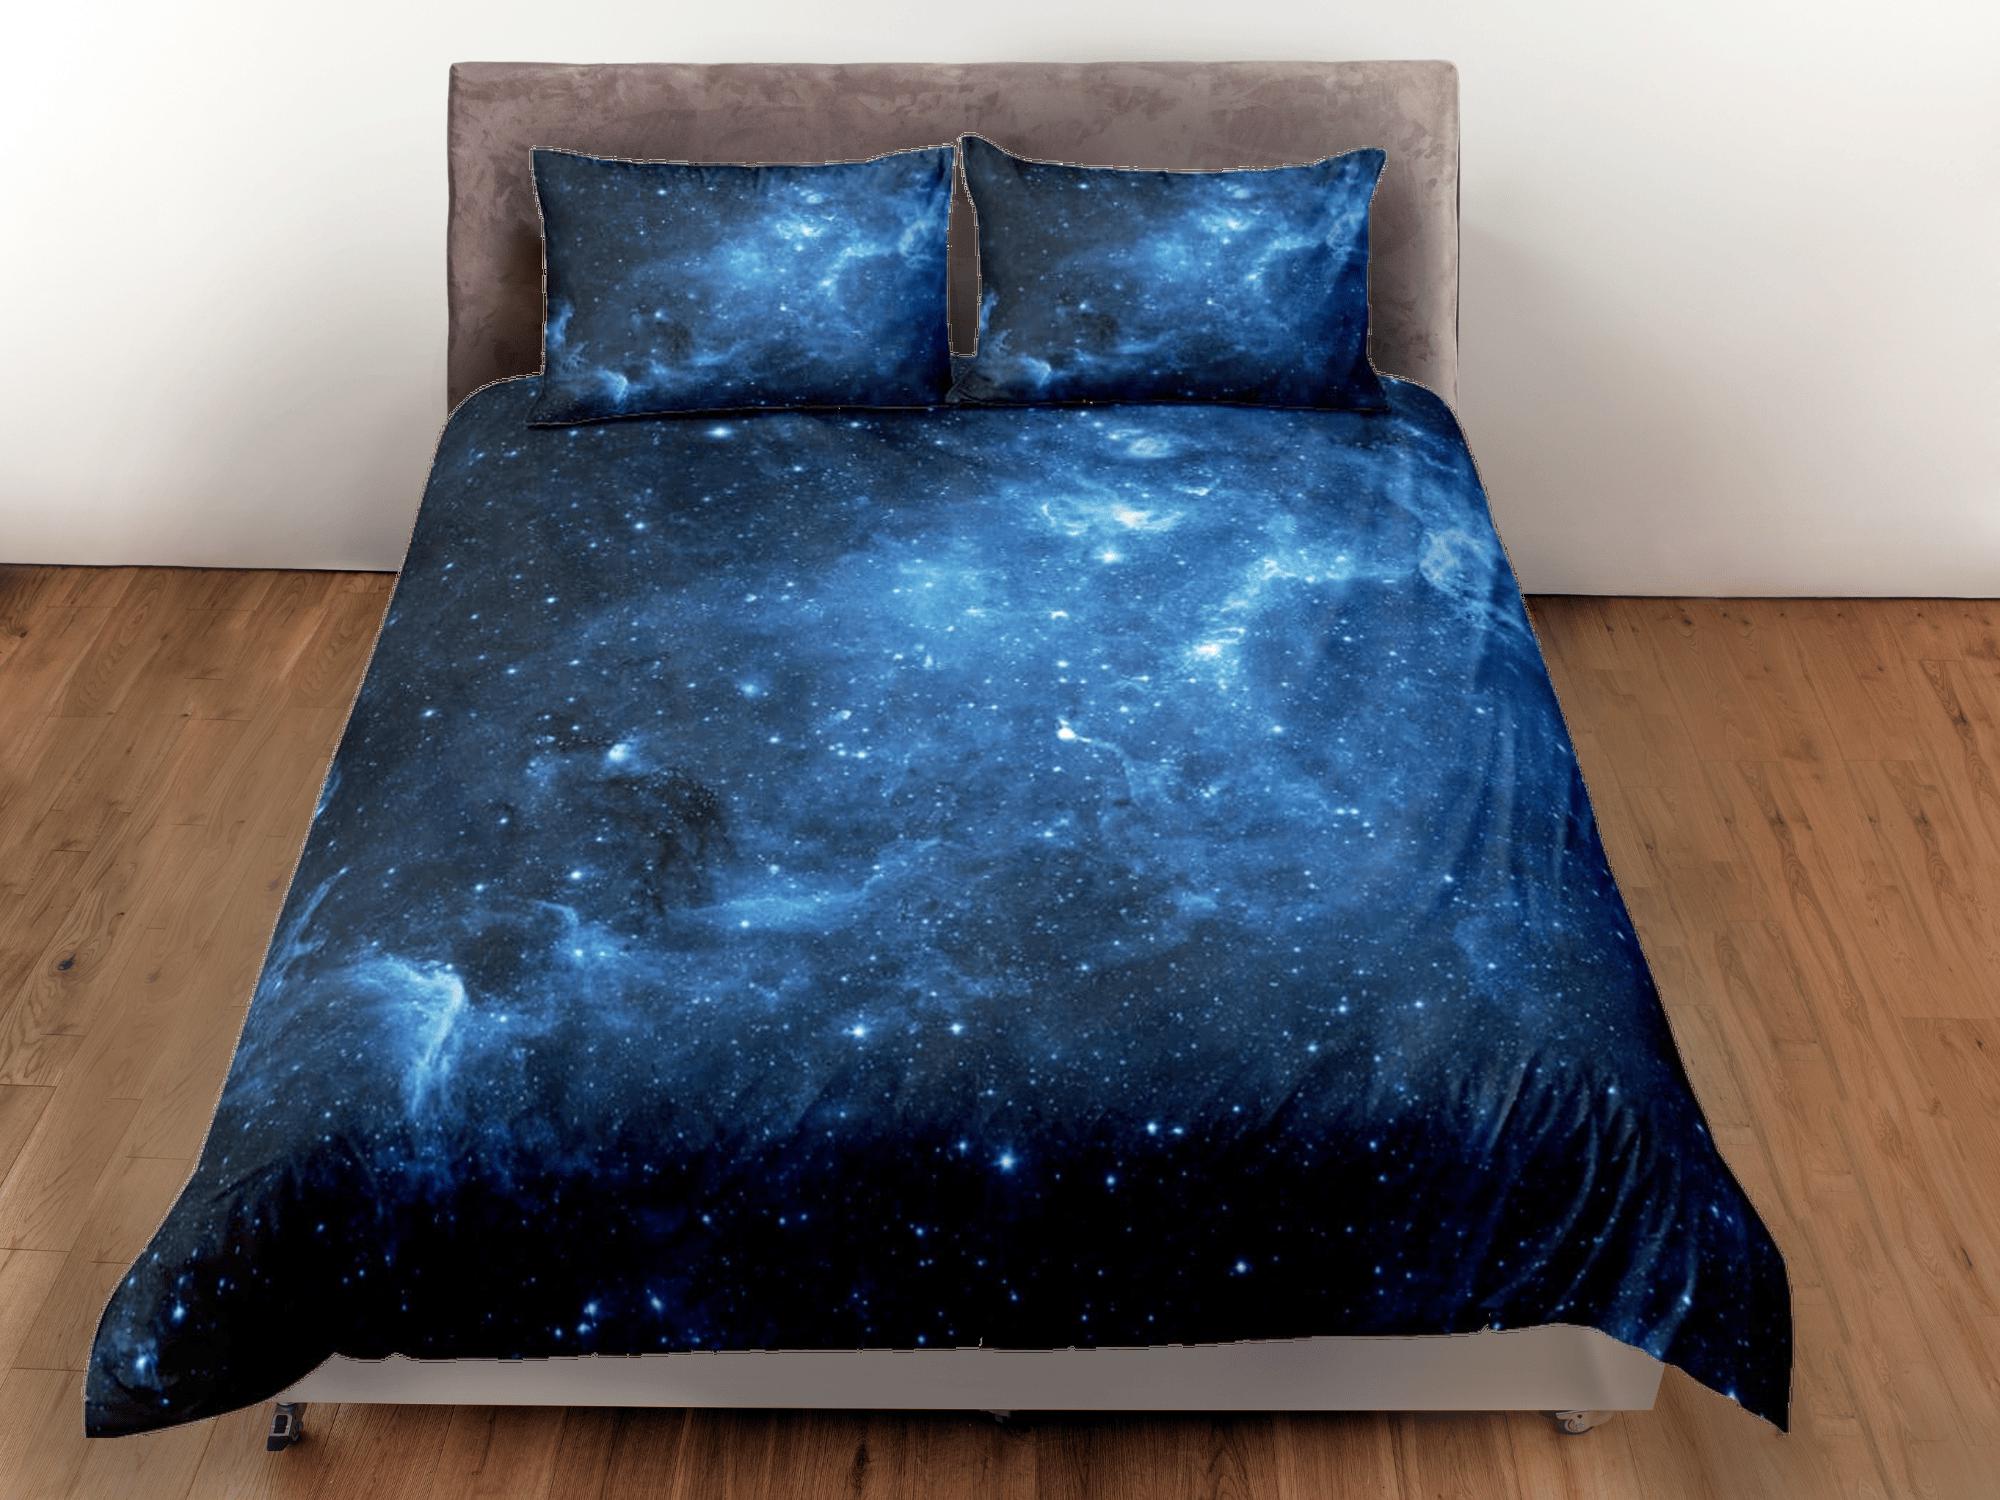 daintyduvet Stars blue galaxy bedding, 3D outer space bedding set full, cosmic duvet cover king, queen, dorm bedding, toddler bedding aesthetic duvet